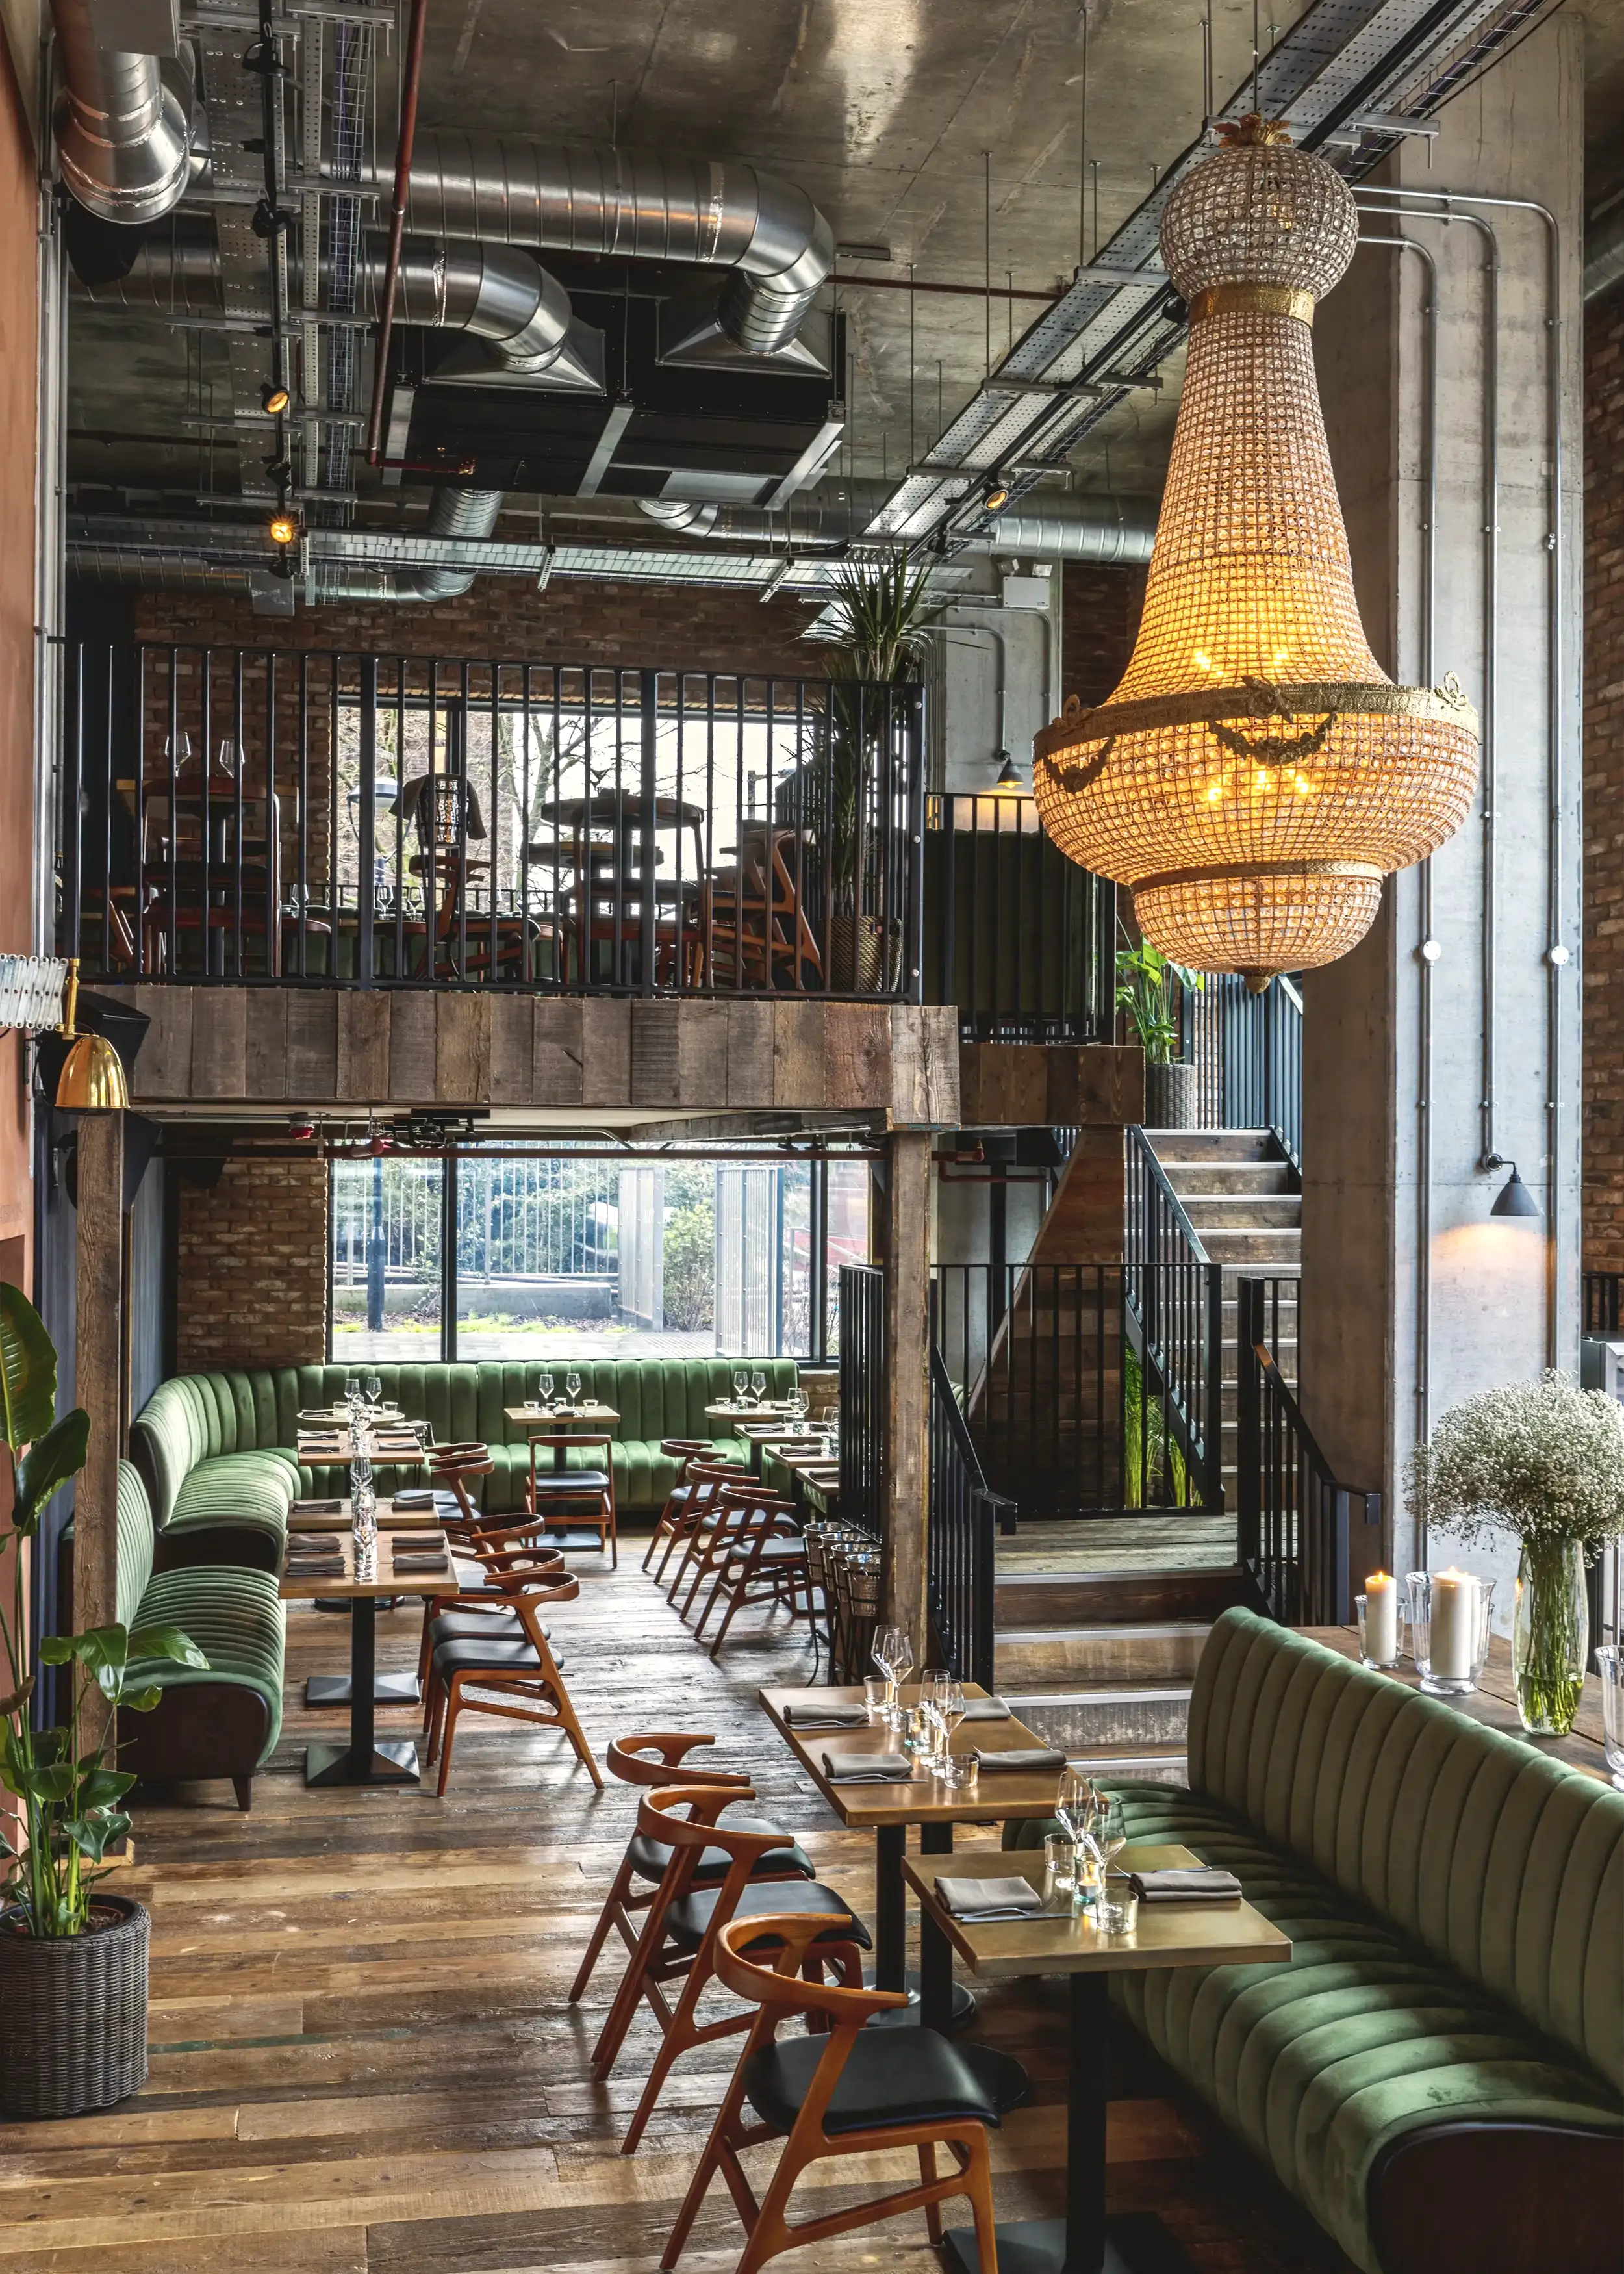 Interior design for Croydon London based restaurant Fern